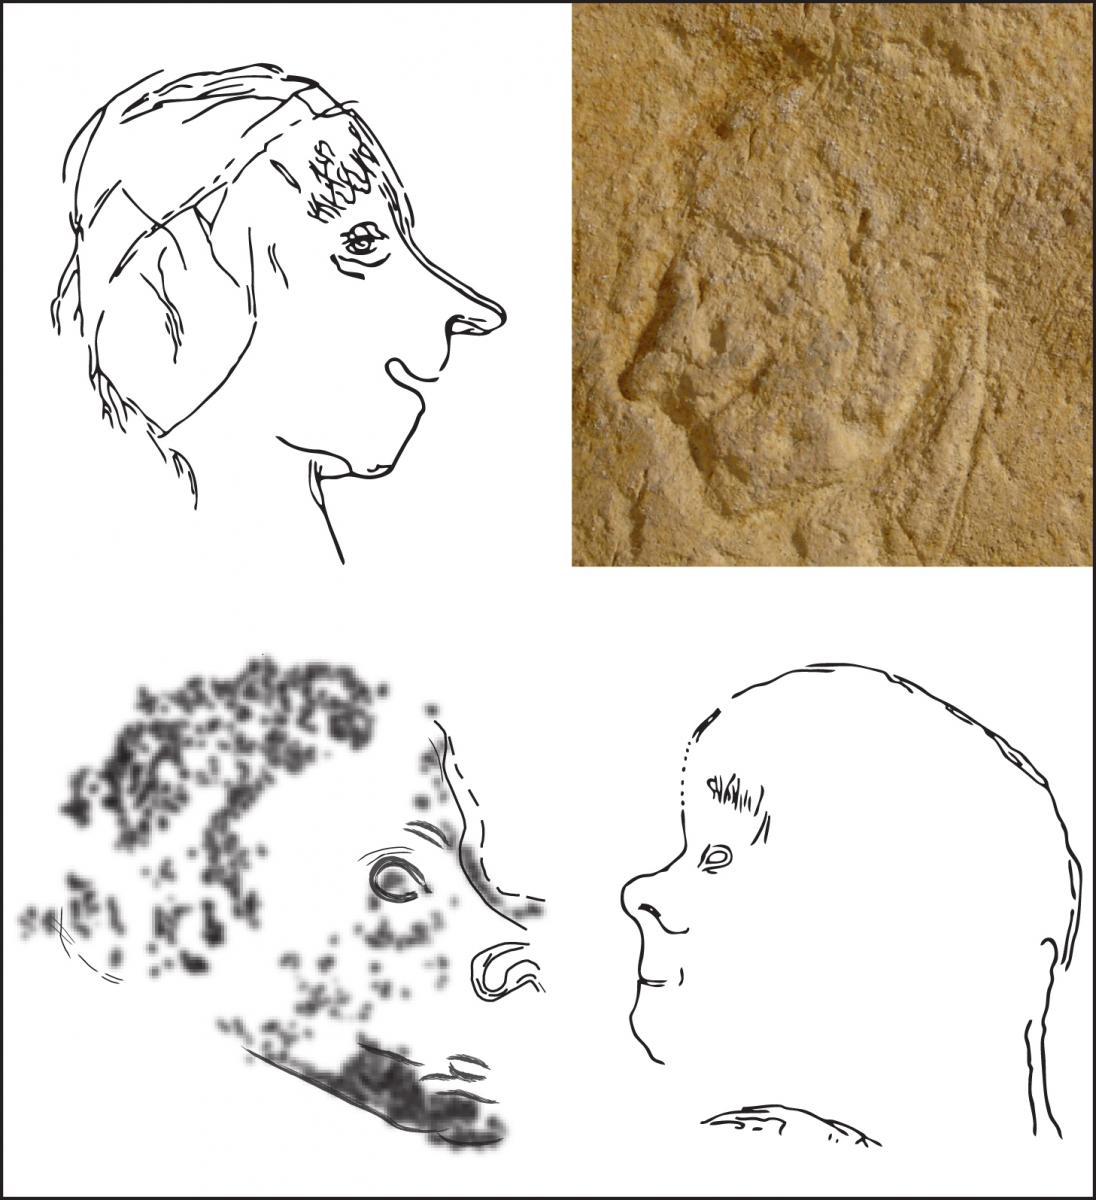 La figuration humaine dans l’art paléolithique